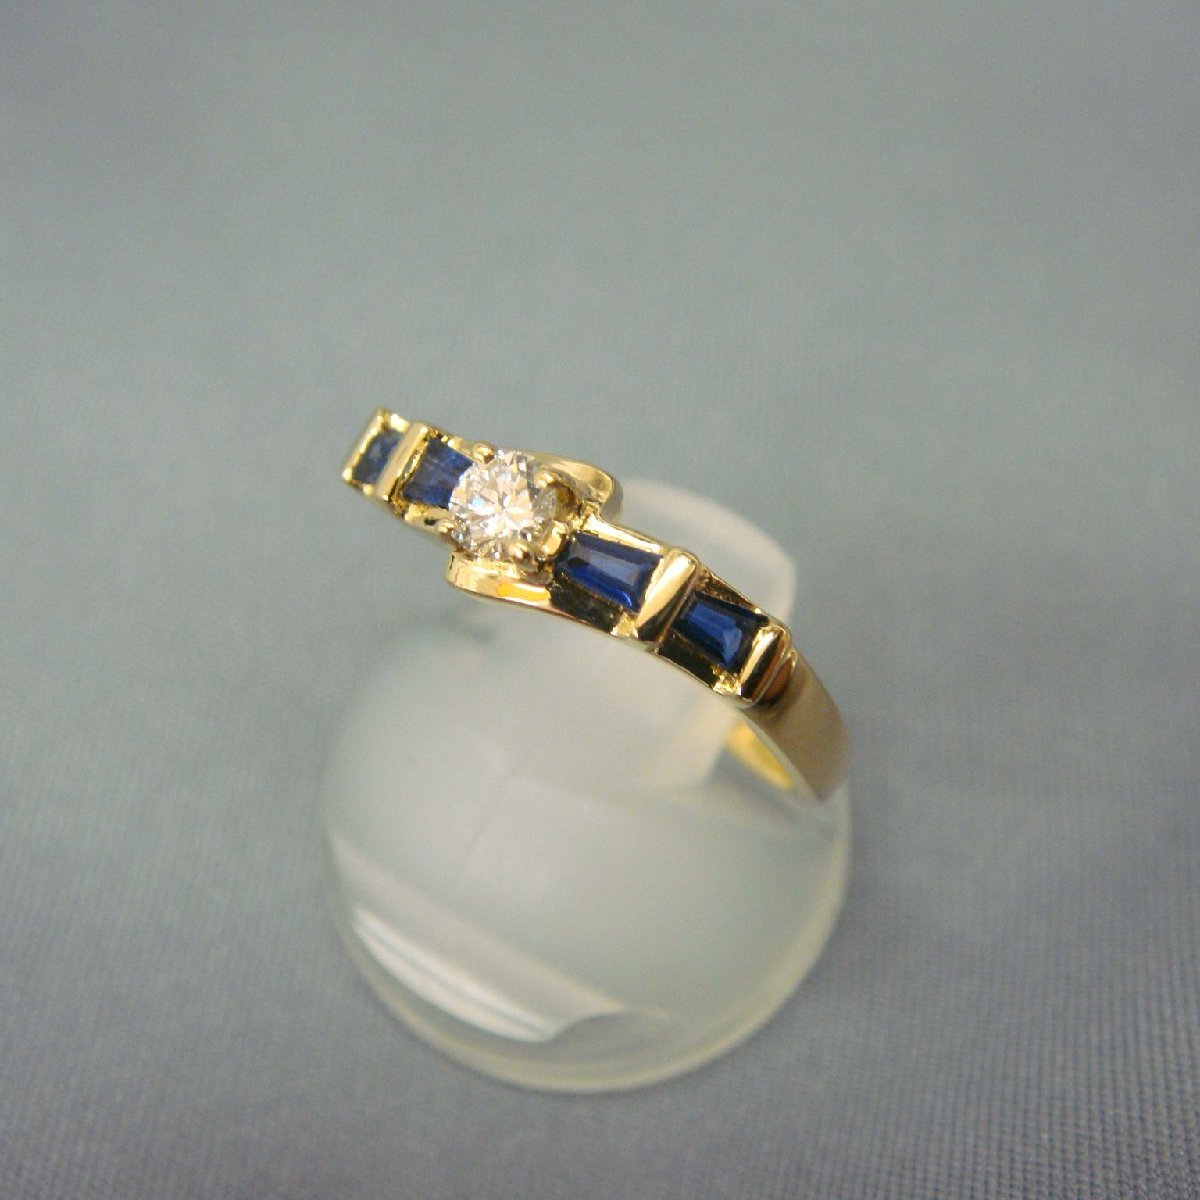 高価値セリー 本物保証 ダイヤモンド 研磨仕上げ済み 指輪